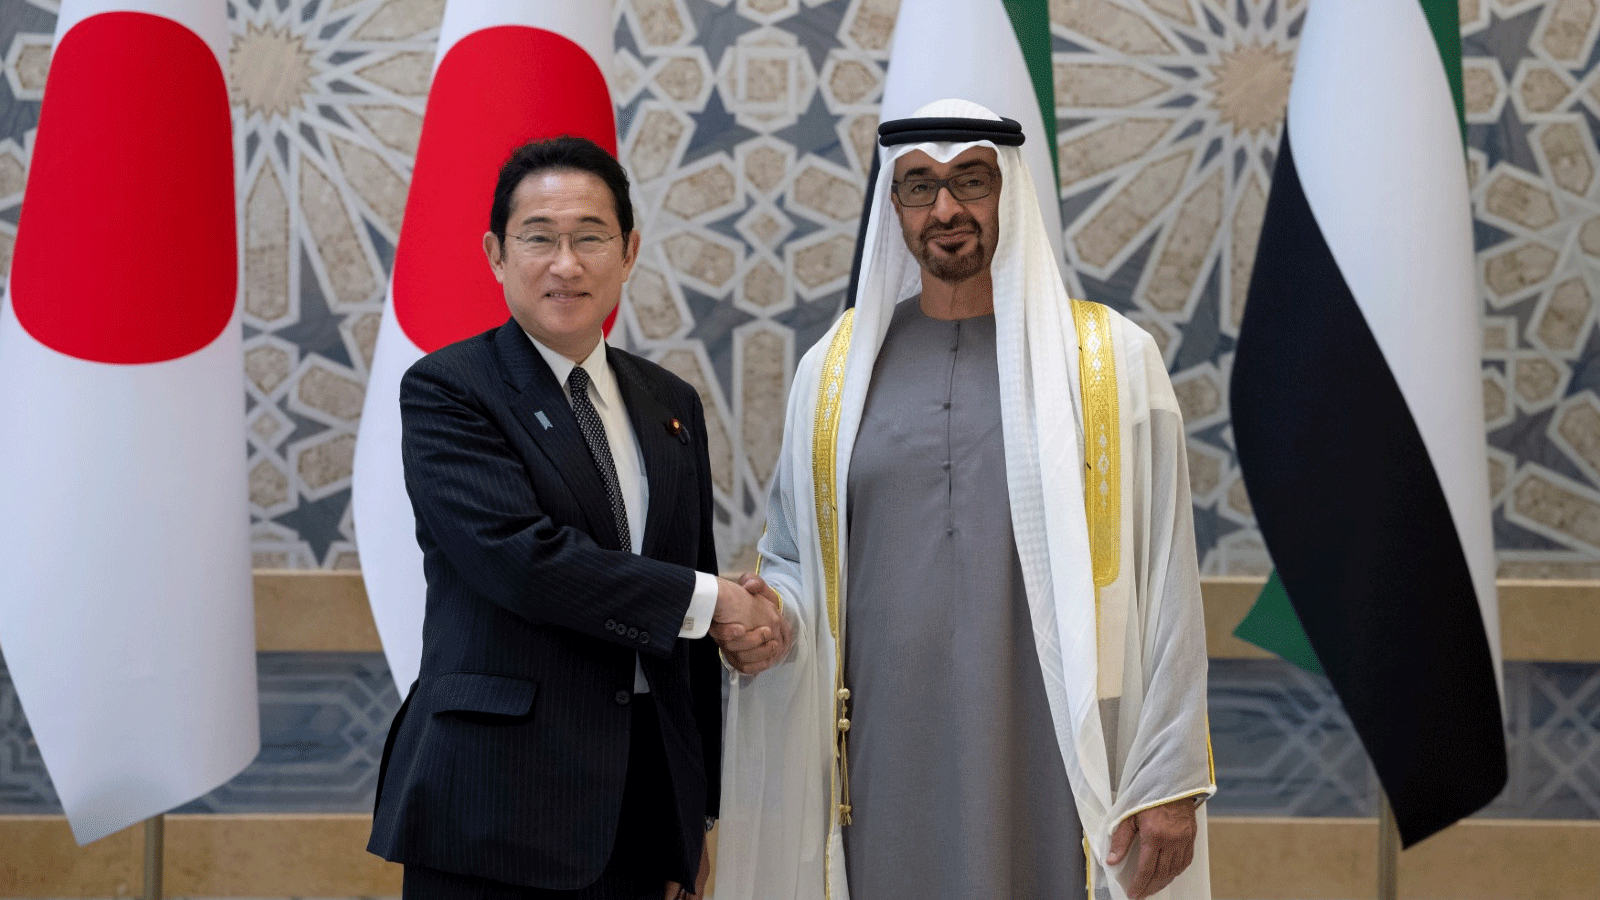 مصافحة بين الرئيس الإماراتي الشيخ محمد بن زايد آل نهيان ورئيس وزراء اليابان فوميو كيشيدا